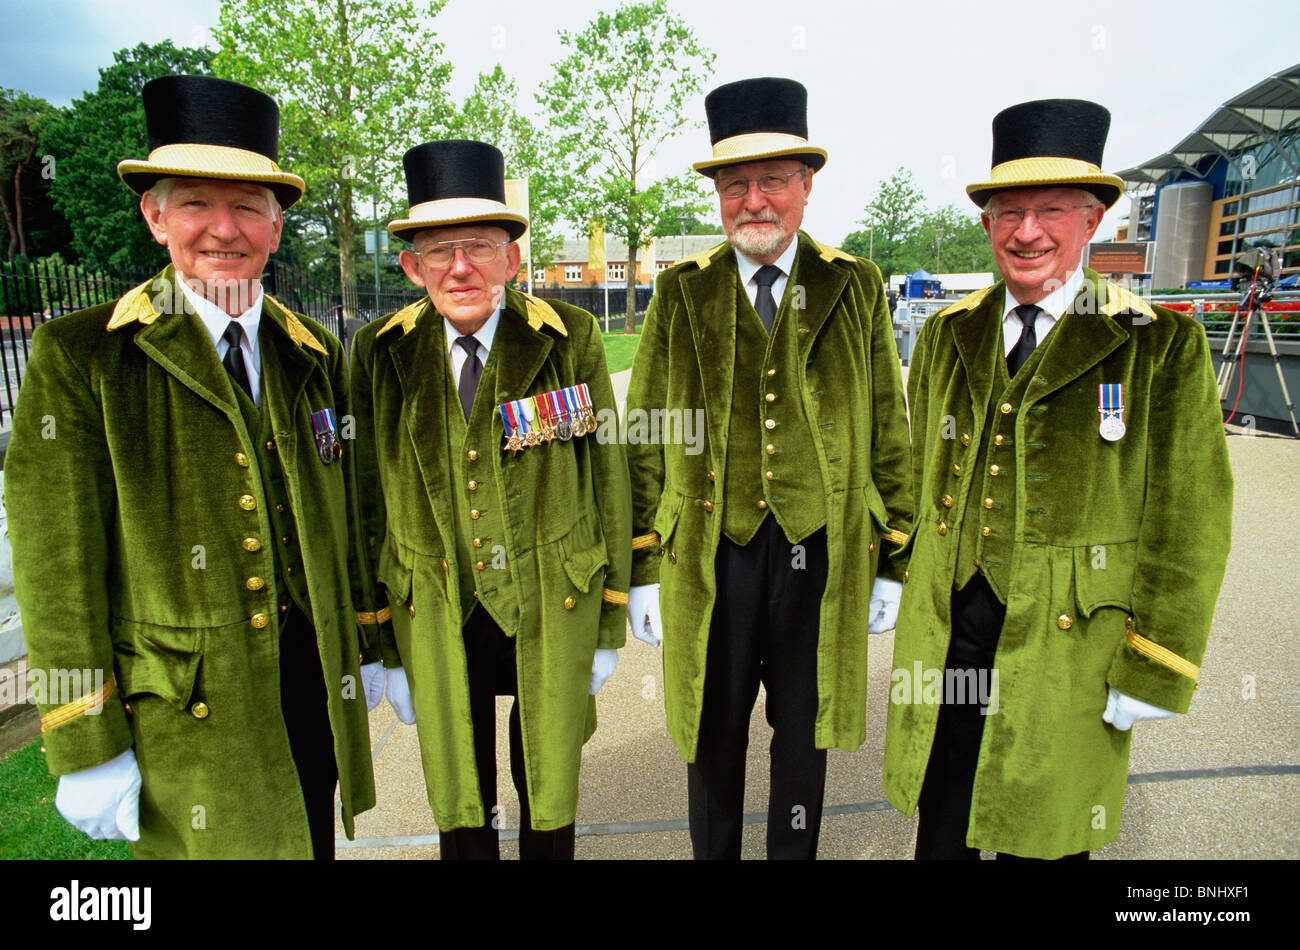 UK United Kingdom Great Britain Britain England Ascot Royal Ascot Royal Ascot Races Greencoats Royal Guards Top Hat Top Hats Stock Photo